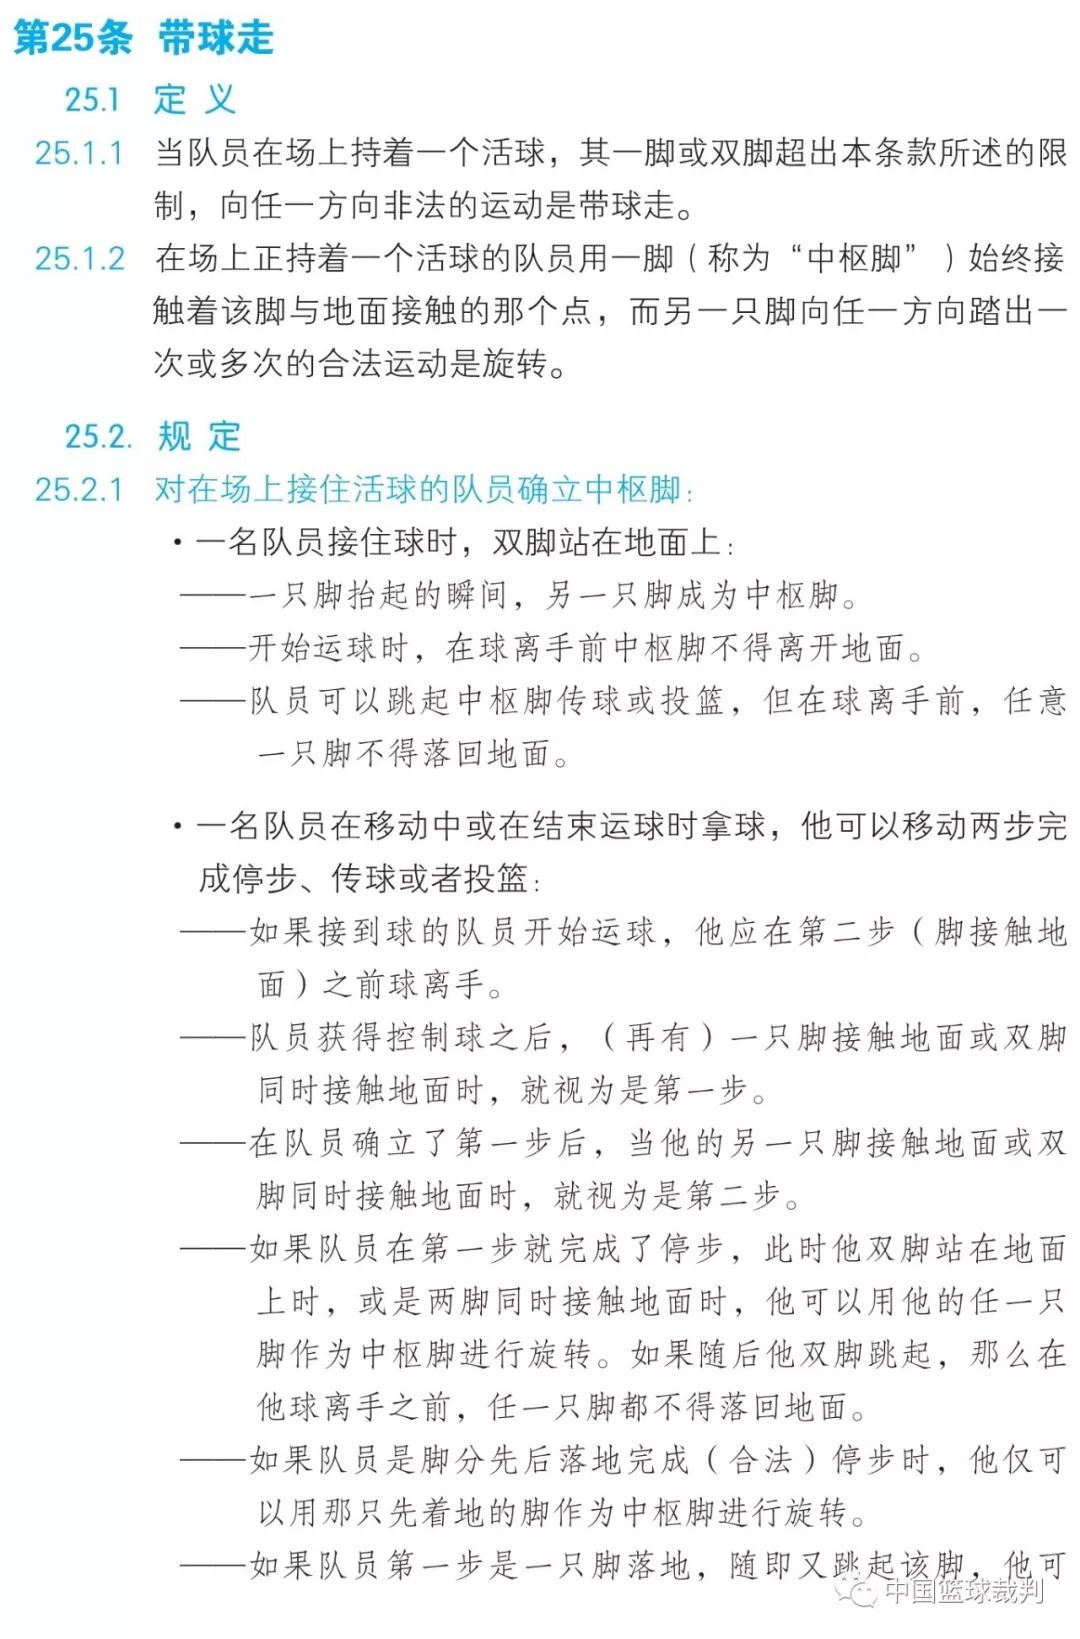 篮球规则2019中文版——第五章 违例 [第25条:带球走]